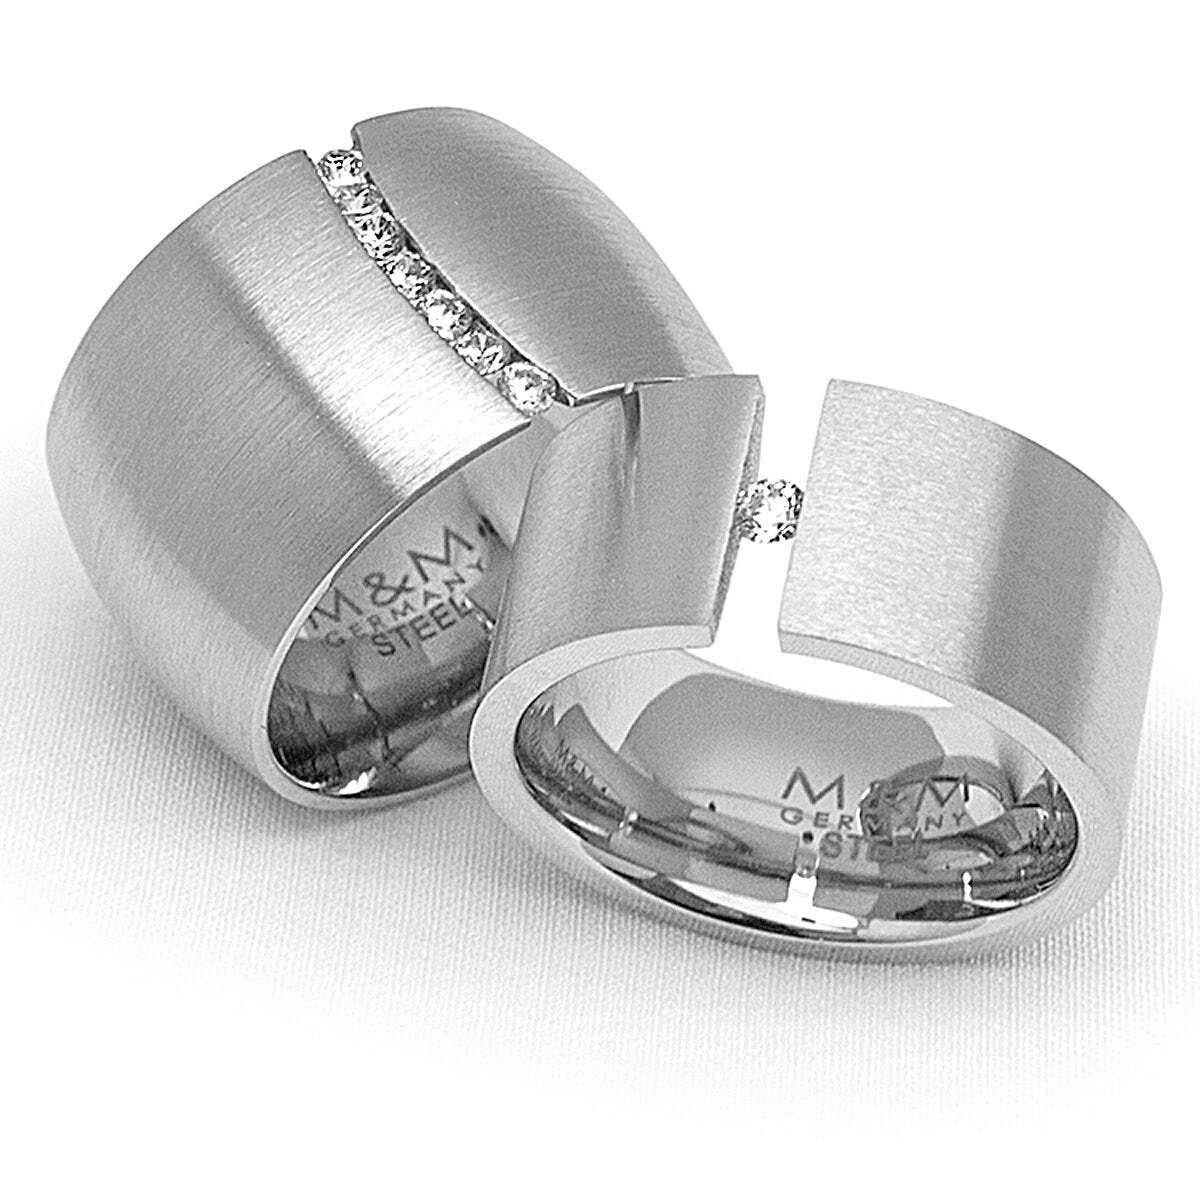 Damen Schmuck M&M Fingerring Ring Damen silber / gold breit (14mm) mit Zirkonia (1-tlg), ModernGlam, deutsche Qualität, inkl. ed